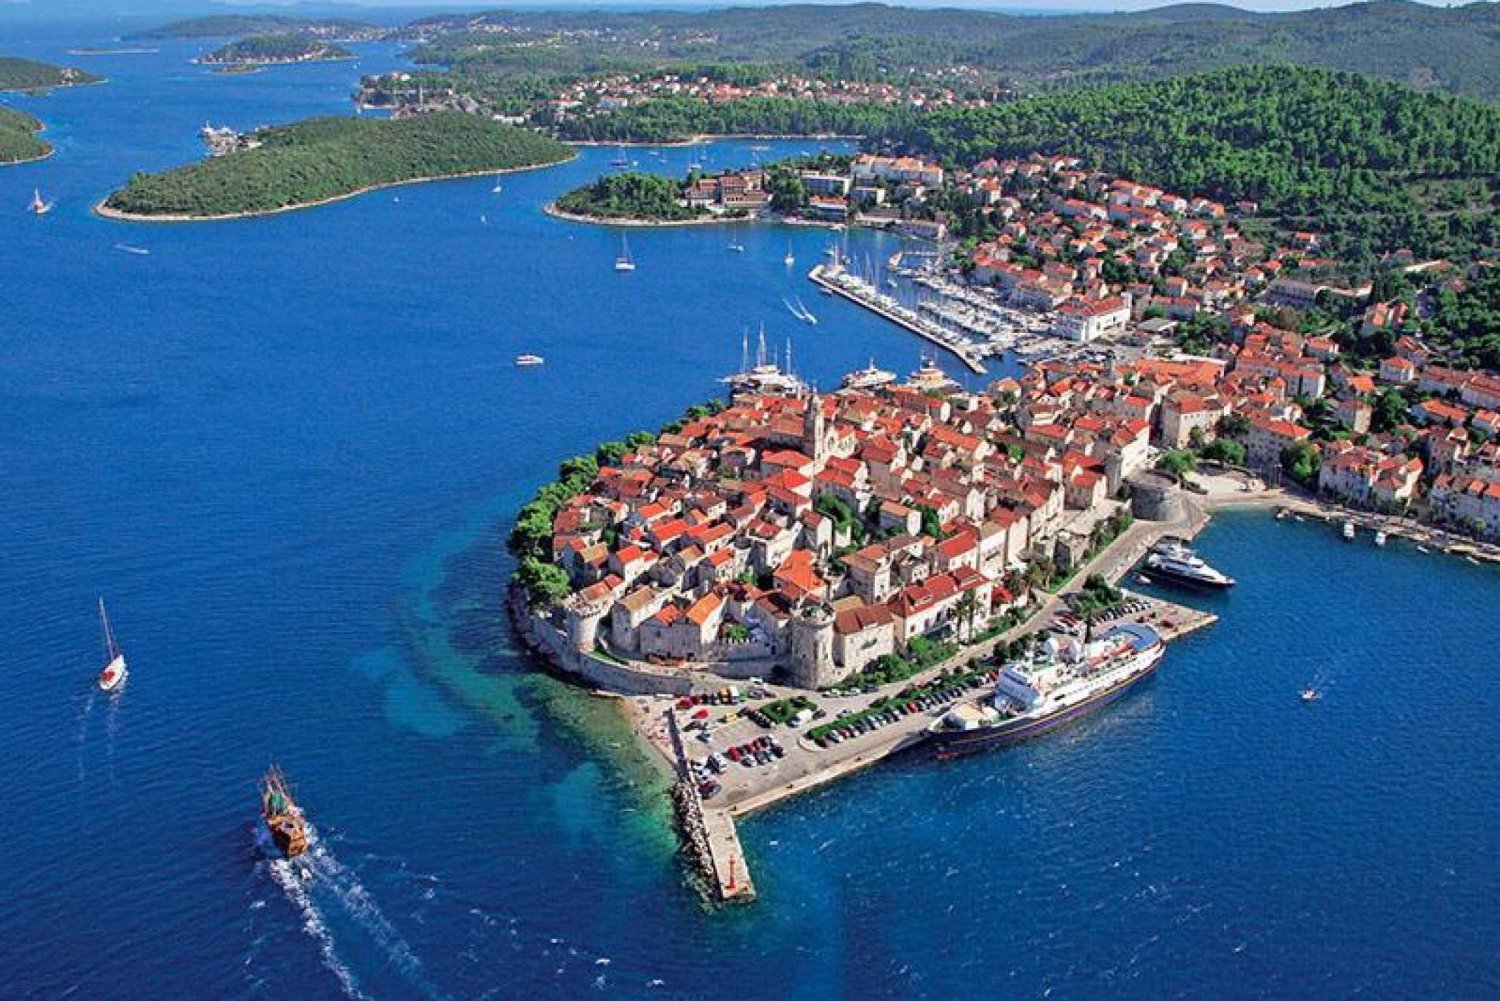 Descubre Korcula desde Dubrovnik con Visita a Bodegas